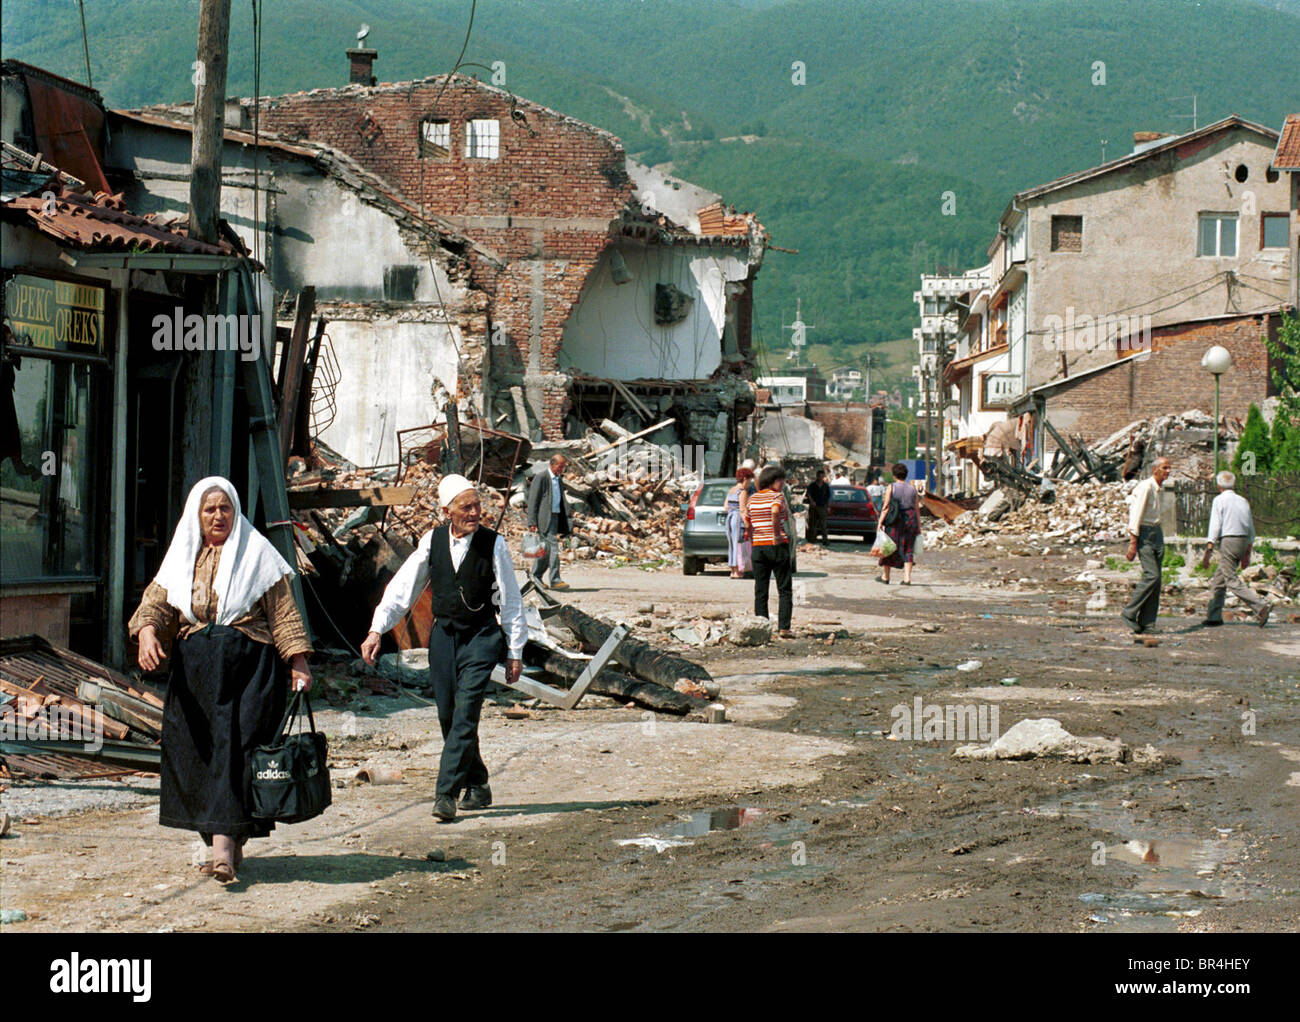 Die Menschen gehen die Straße vorbei an der Zerstörung in Peja, Kosovo  Stockfotografie - Alamy